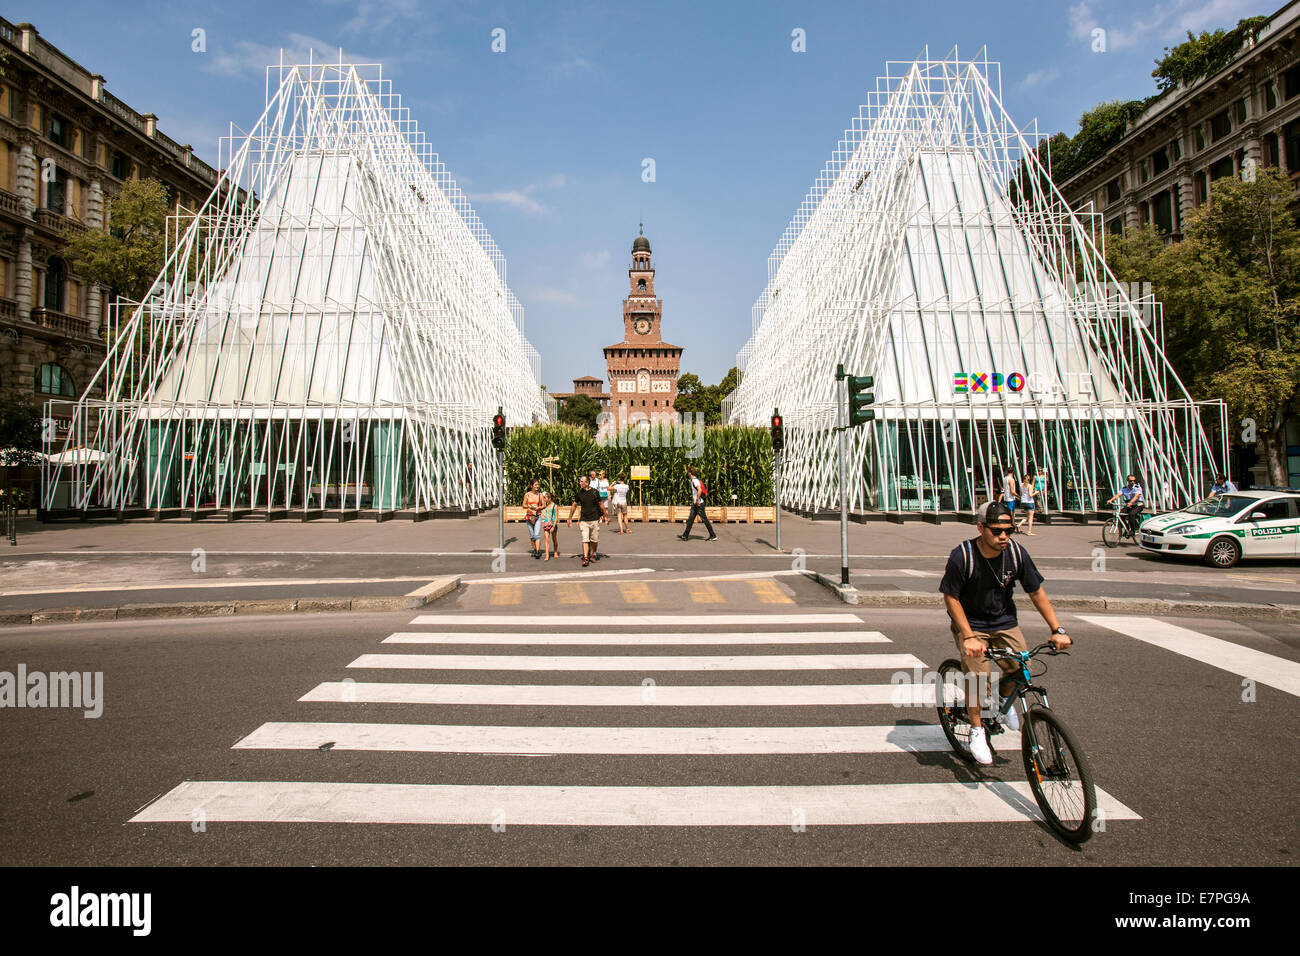 Milán, la Expo 2015, EXPOGATE, feria, Exposición Universal, el castillo Sforzesco, city gate, Infopoint, cruce de peatones, ciclistas Foto de stock